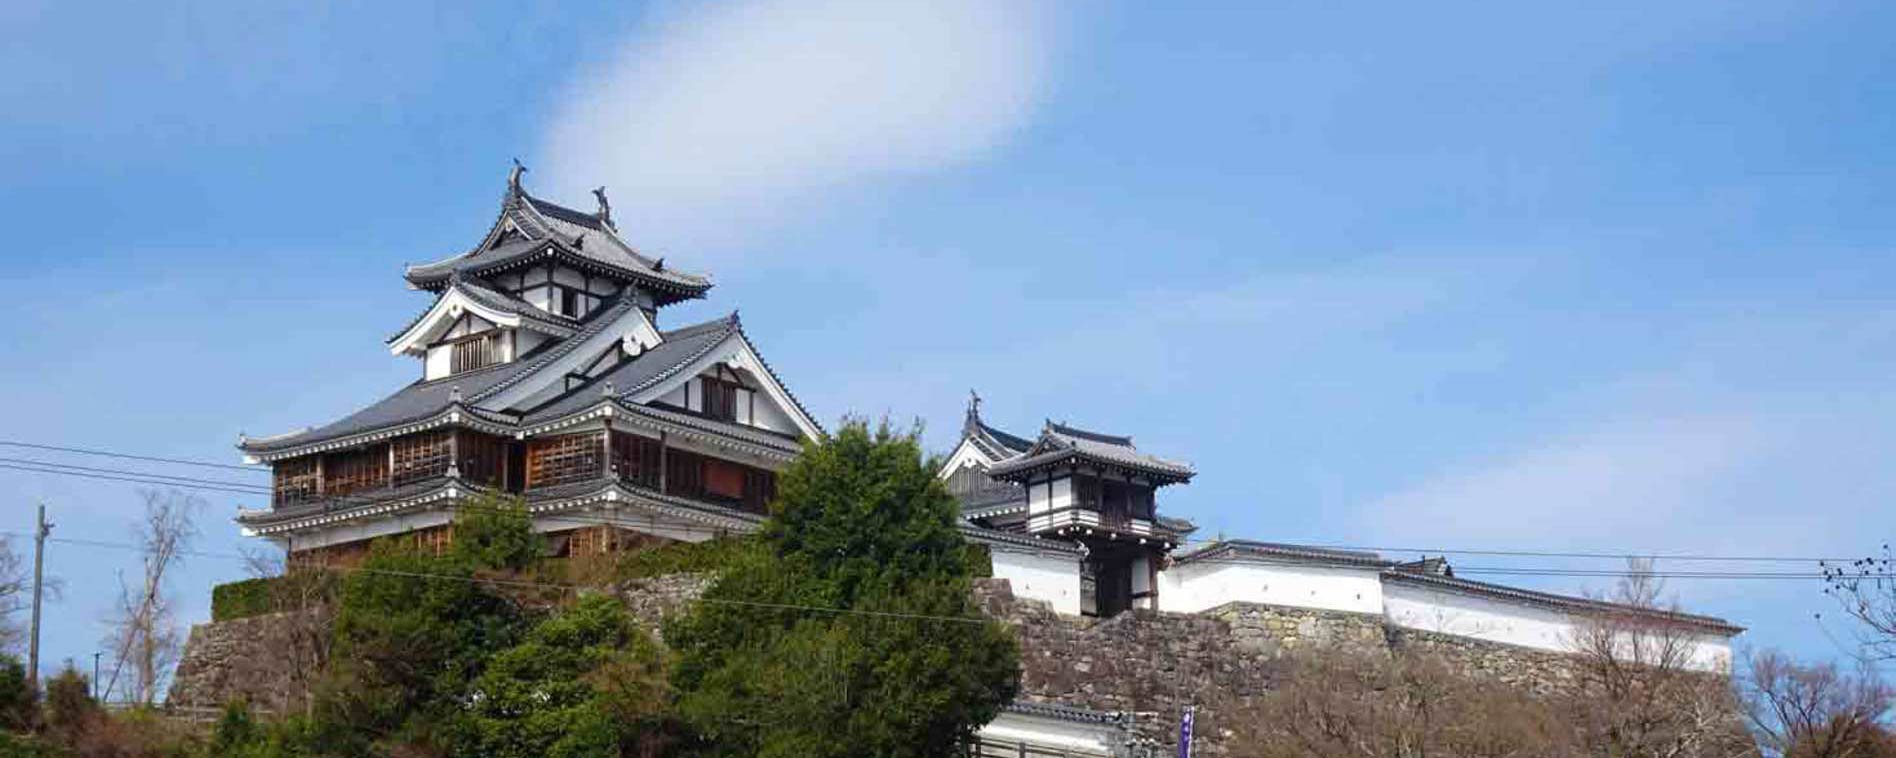 福知山城の観光 写真ギャラリー 京都の観光地 旅行情報を掲載 観光情報のポータルサイト